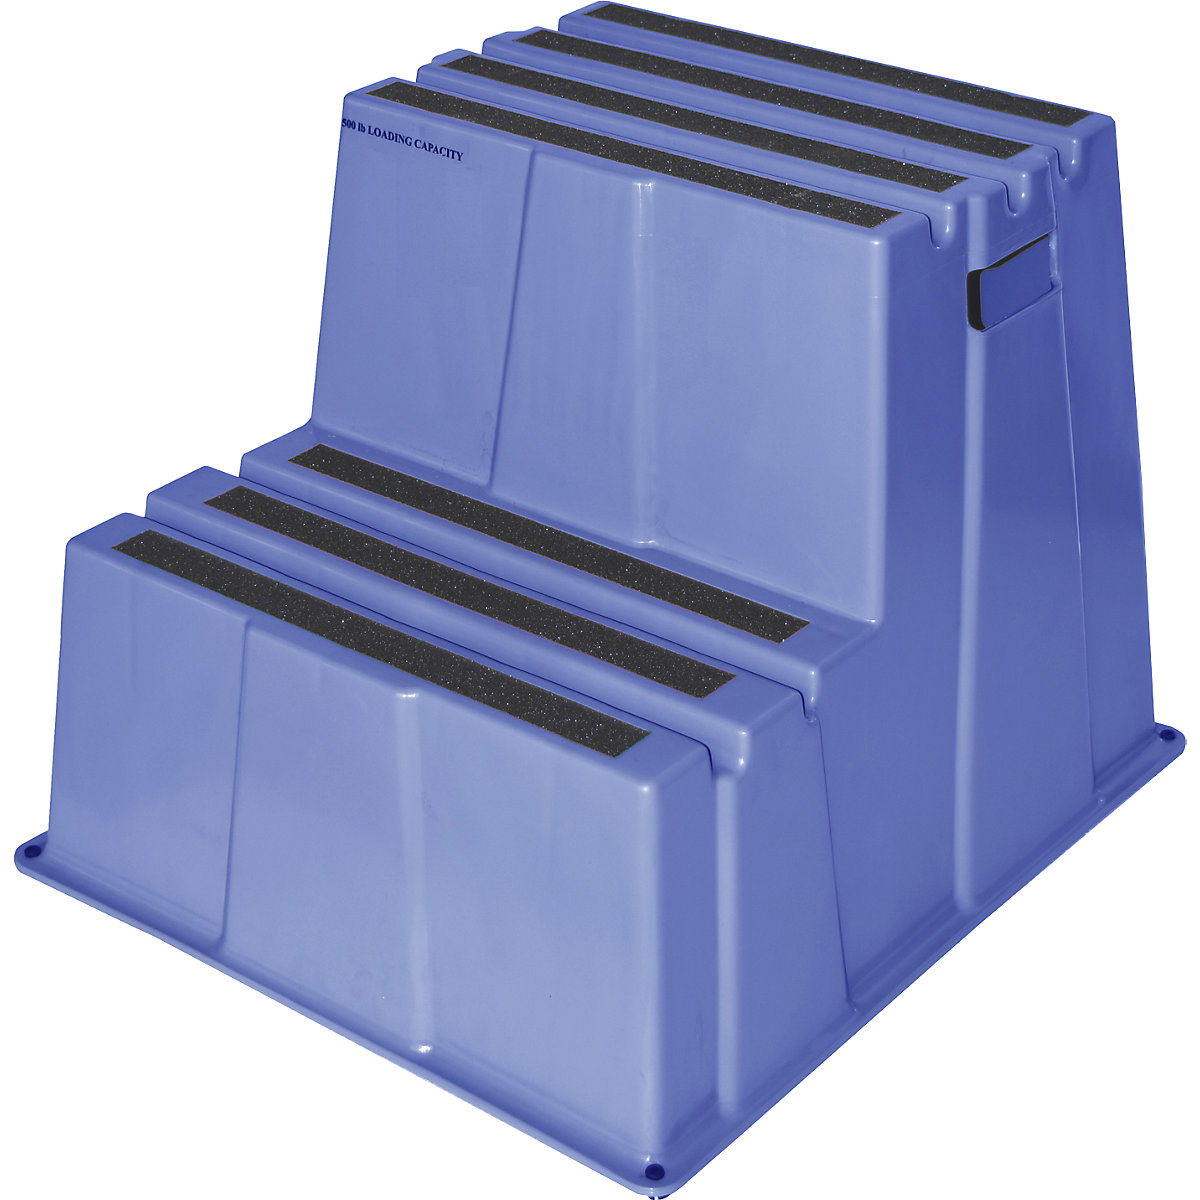 Scaletta in plastica con gradini con rivestimento antiscivolo – Twinco, portata 150 kg, 2 gradini, blu, a partire da 2 pz.-2